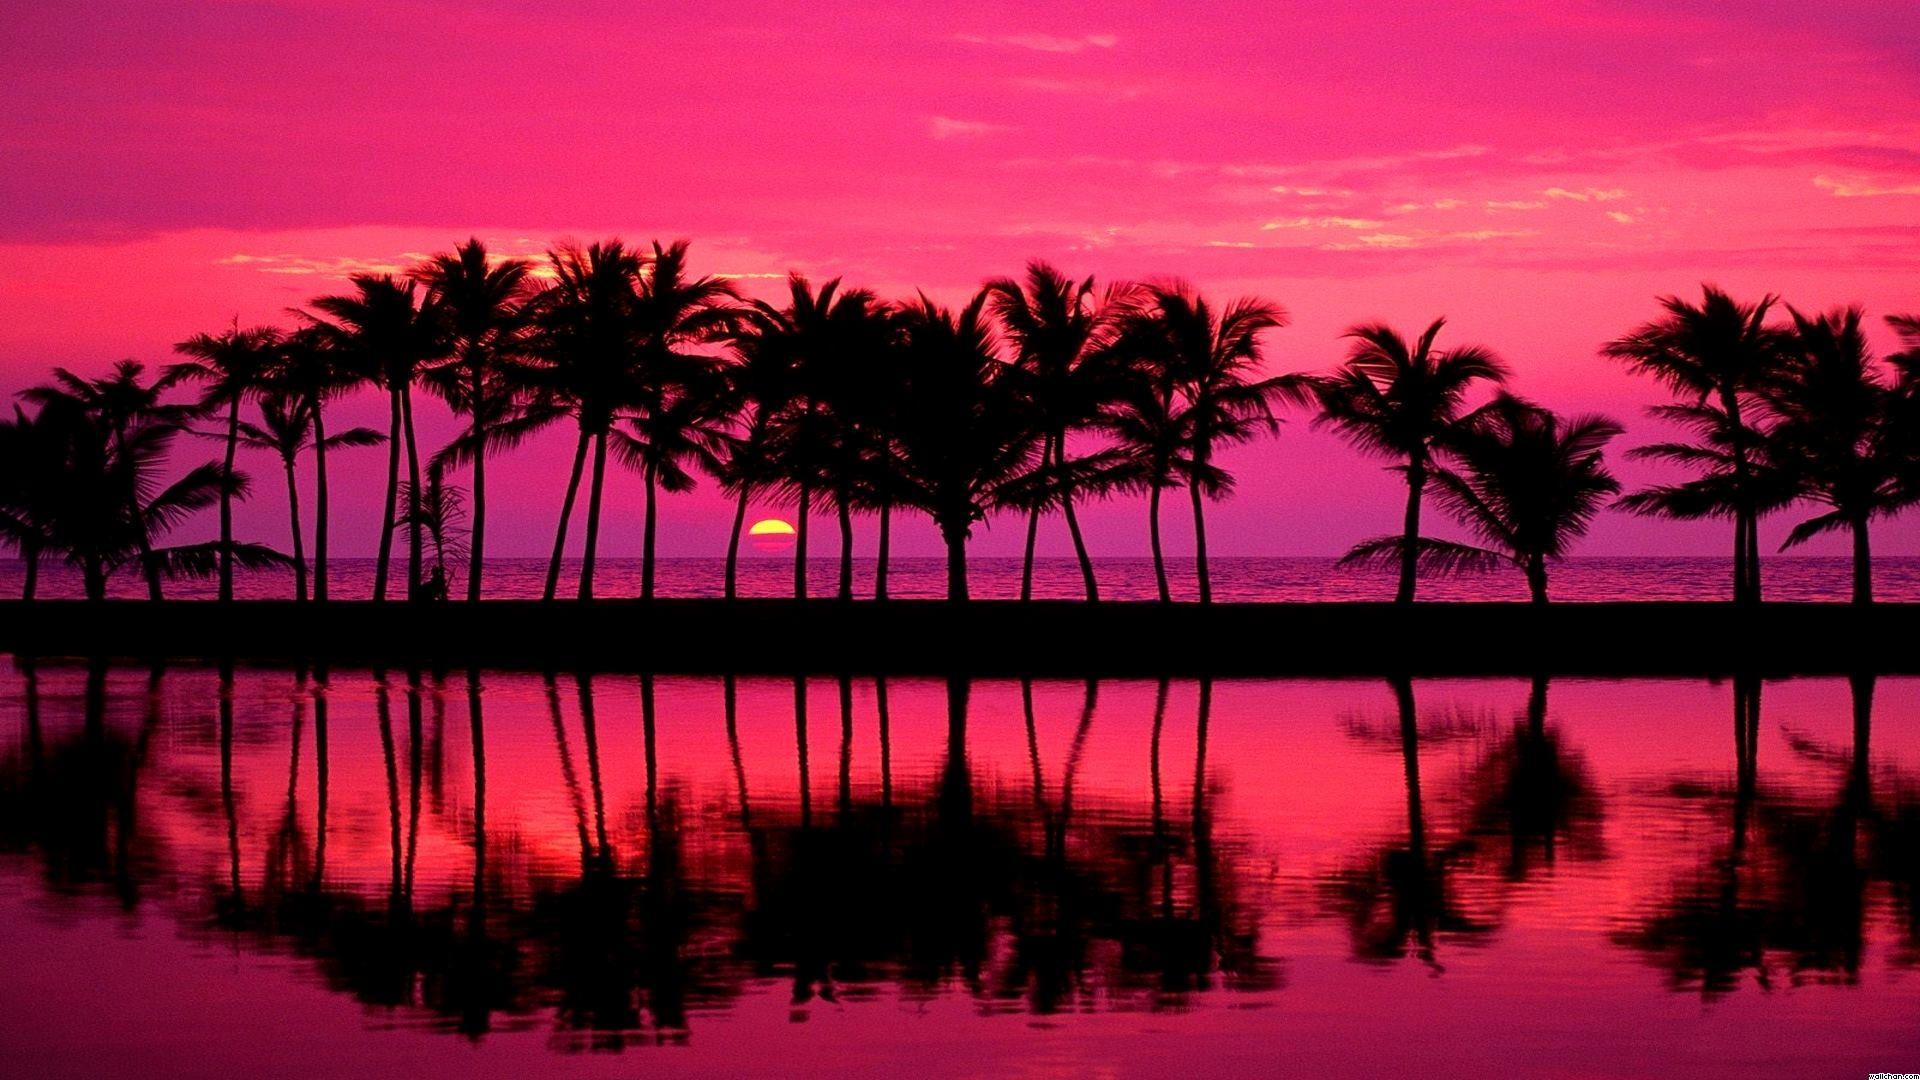 Pink Beach Sunset Wallpapers - Top Free Pink Beach Sunset Backgrounds - WallpaperAccess